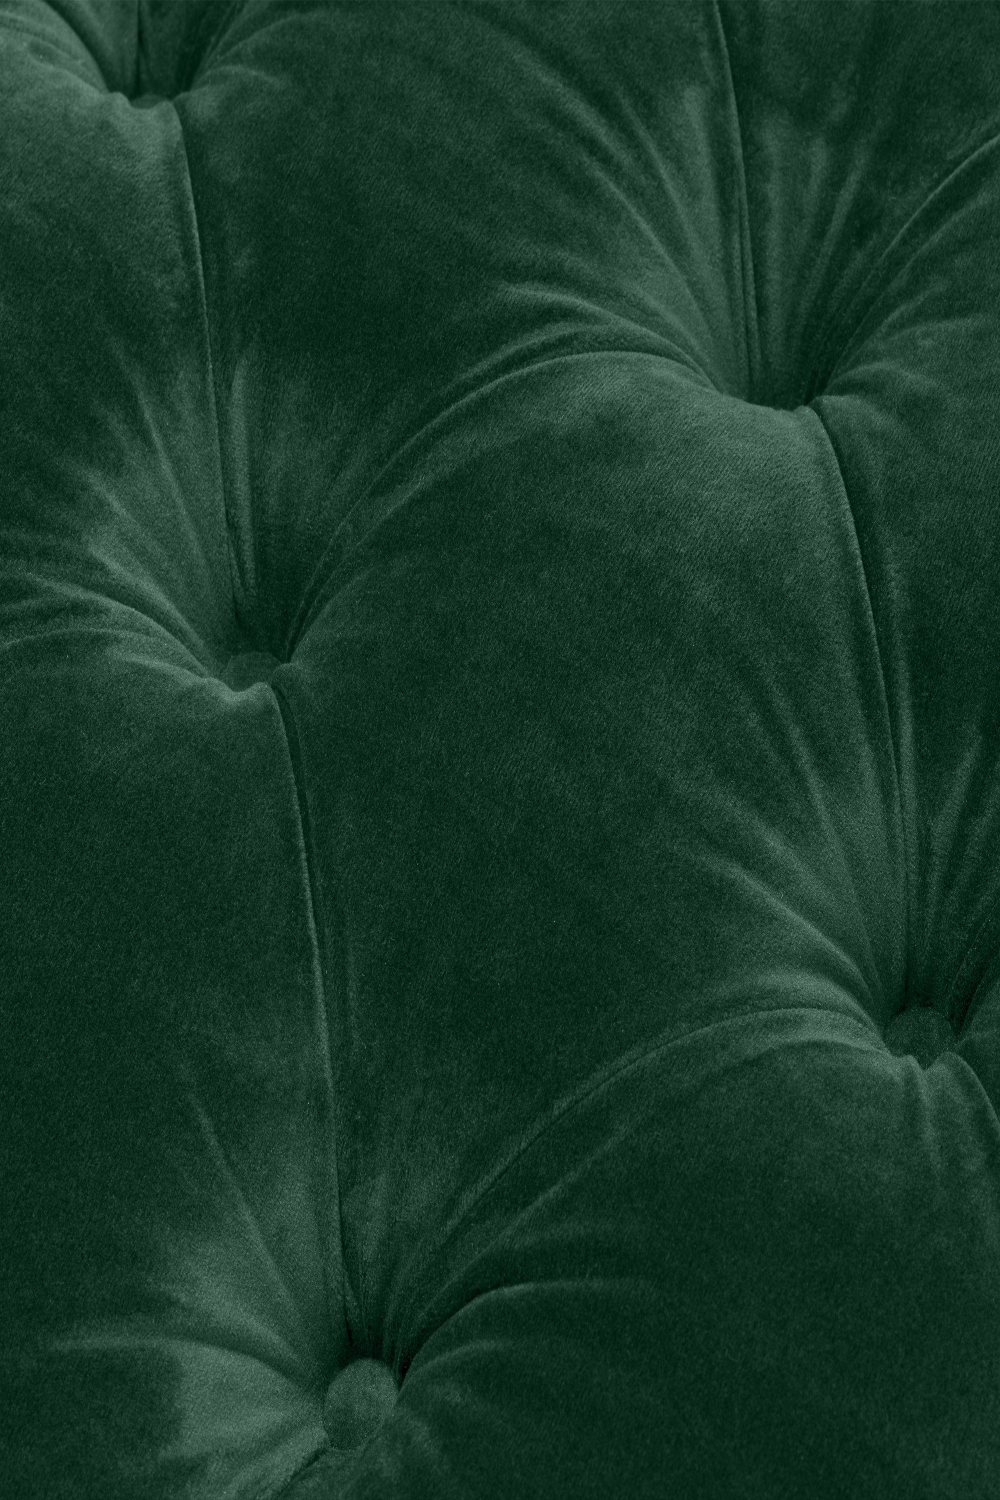 Green Velvet Tufted Chair | Eichholtz Castelle | Oroa.com